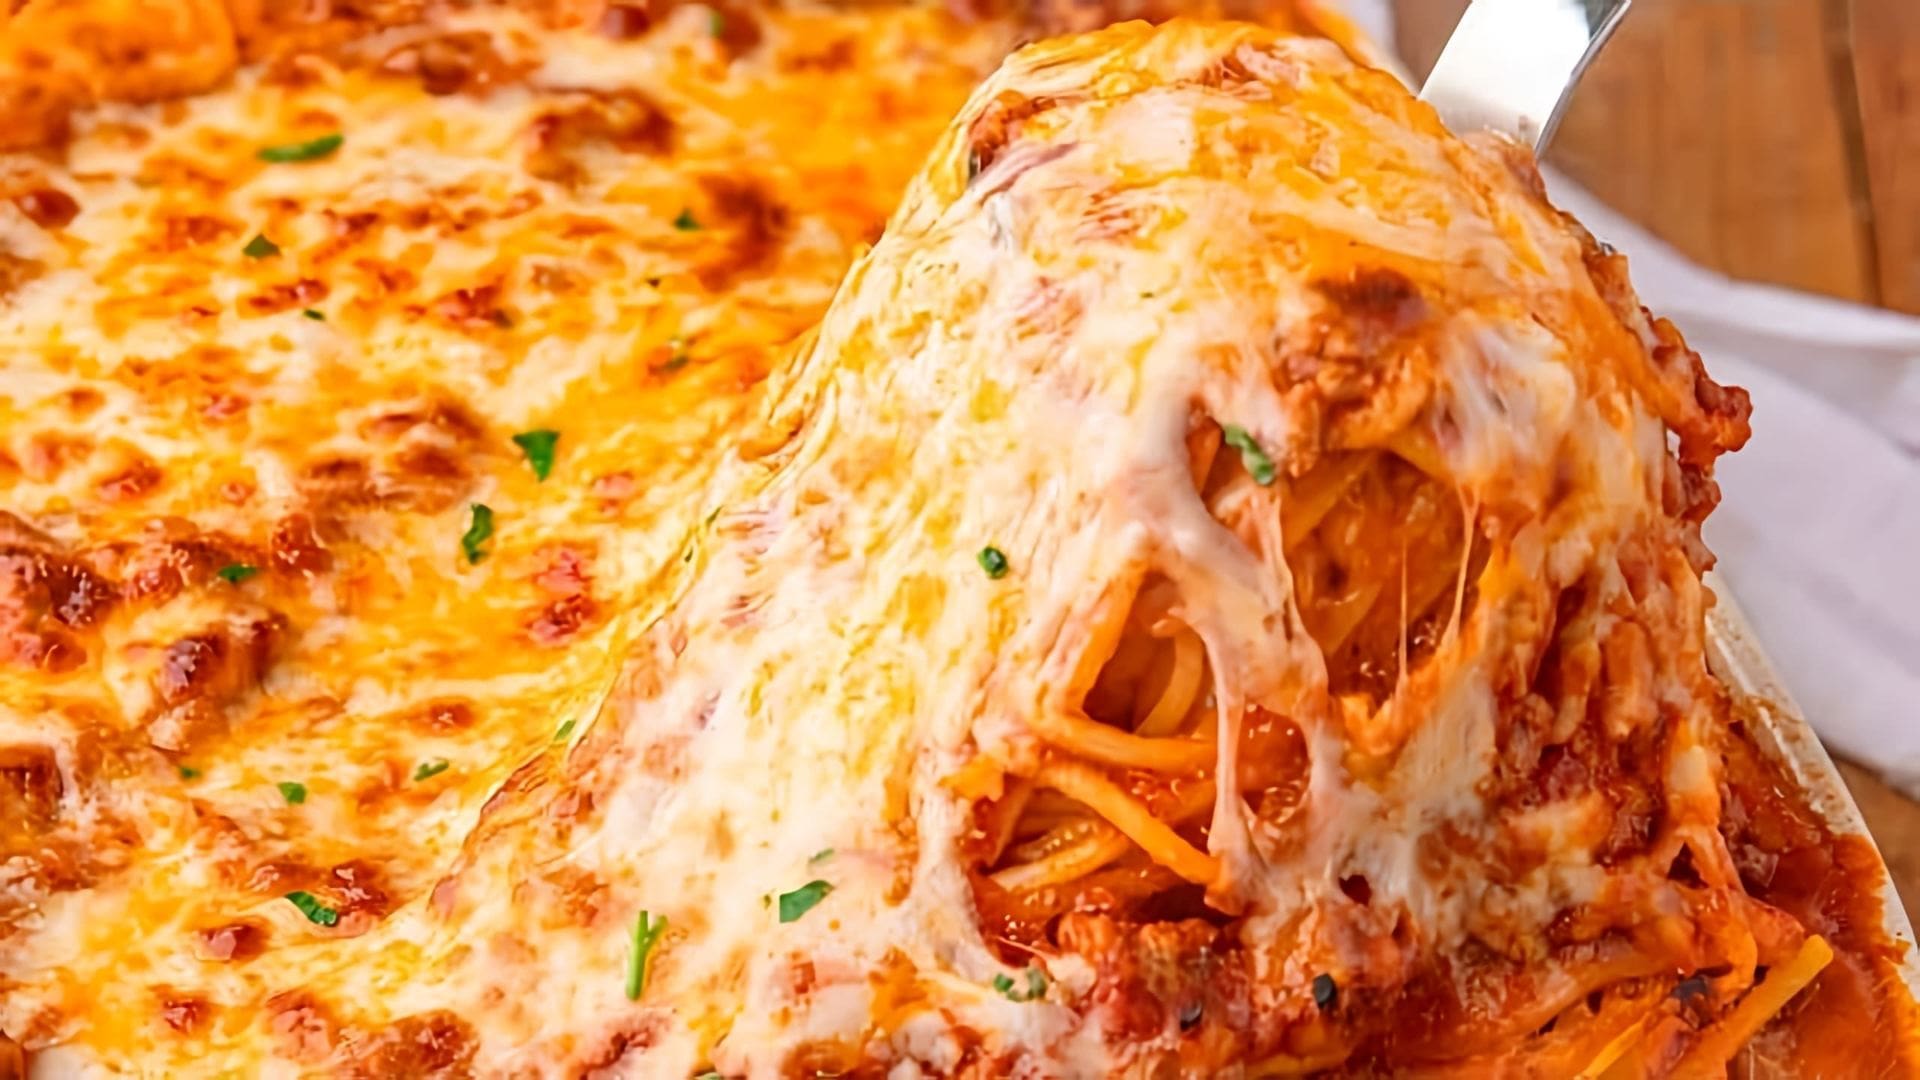 Проверка рецепта - спагетти с томатным соусом в духовке. А вы уже пробовали готовить этот популярный рецепт?